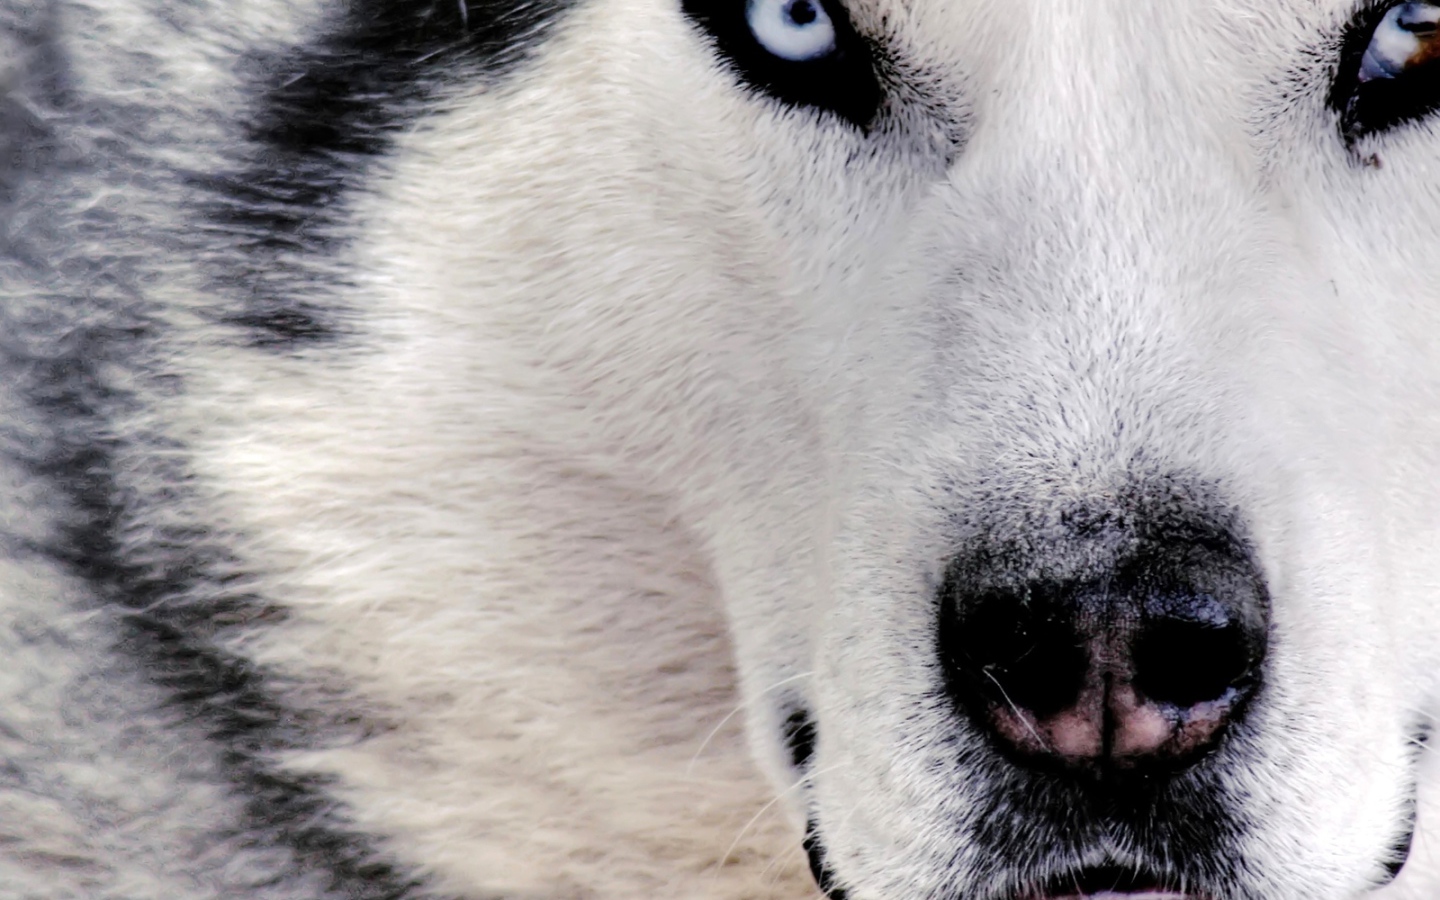 Siberian Husky close up